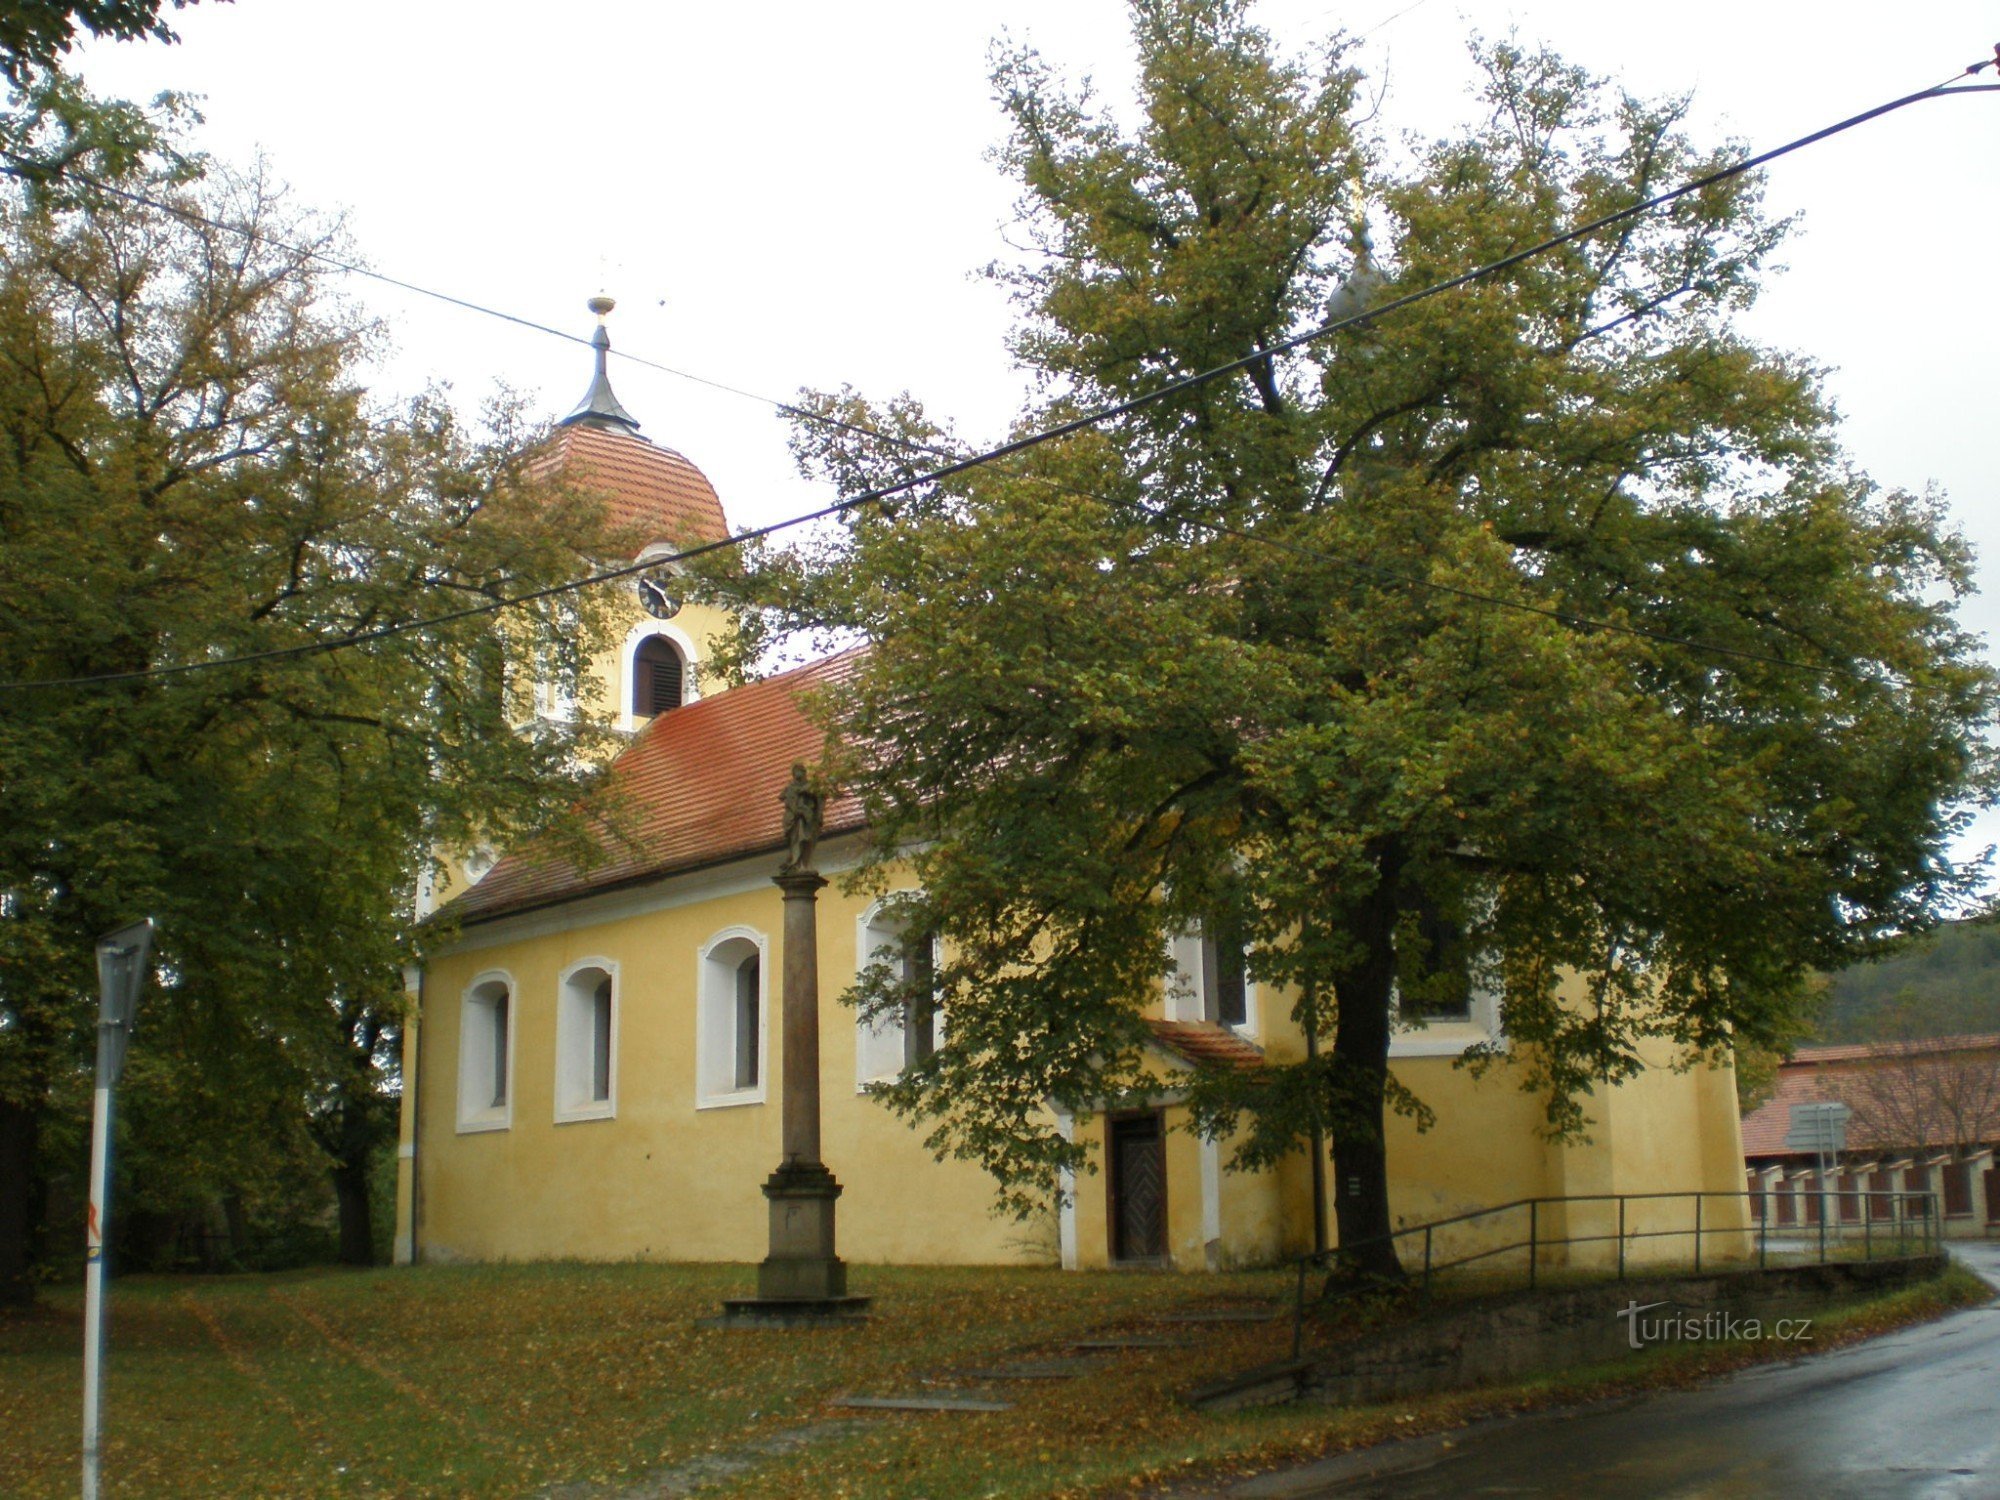 Lochovice - Pyhän Nikolauksen kirkko. Andrew